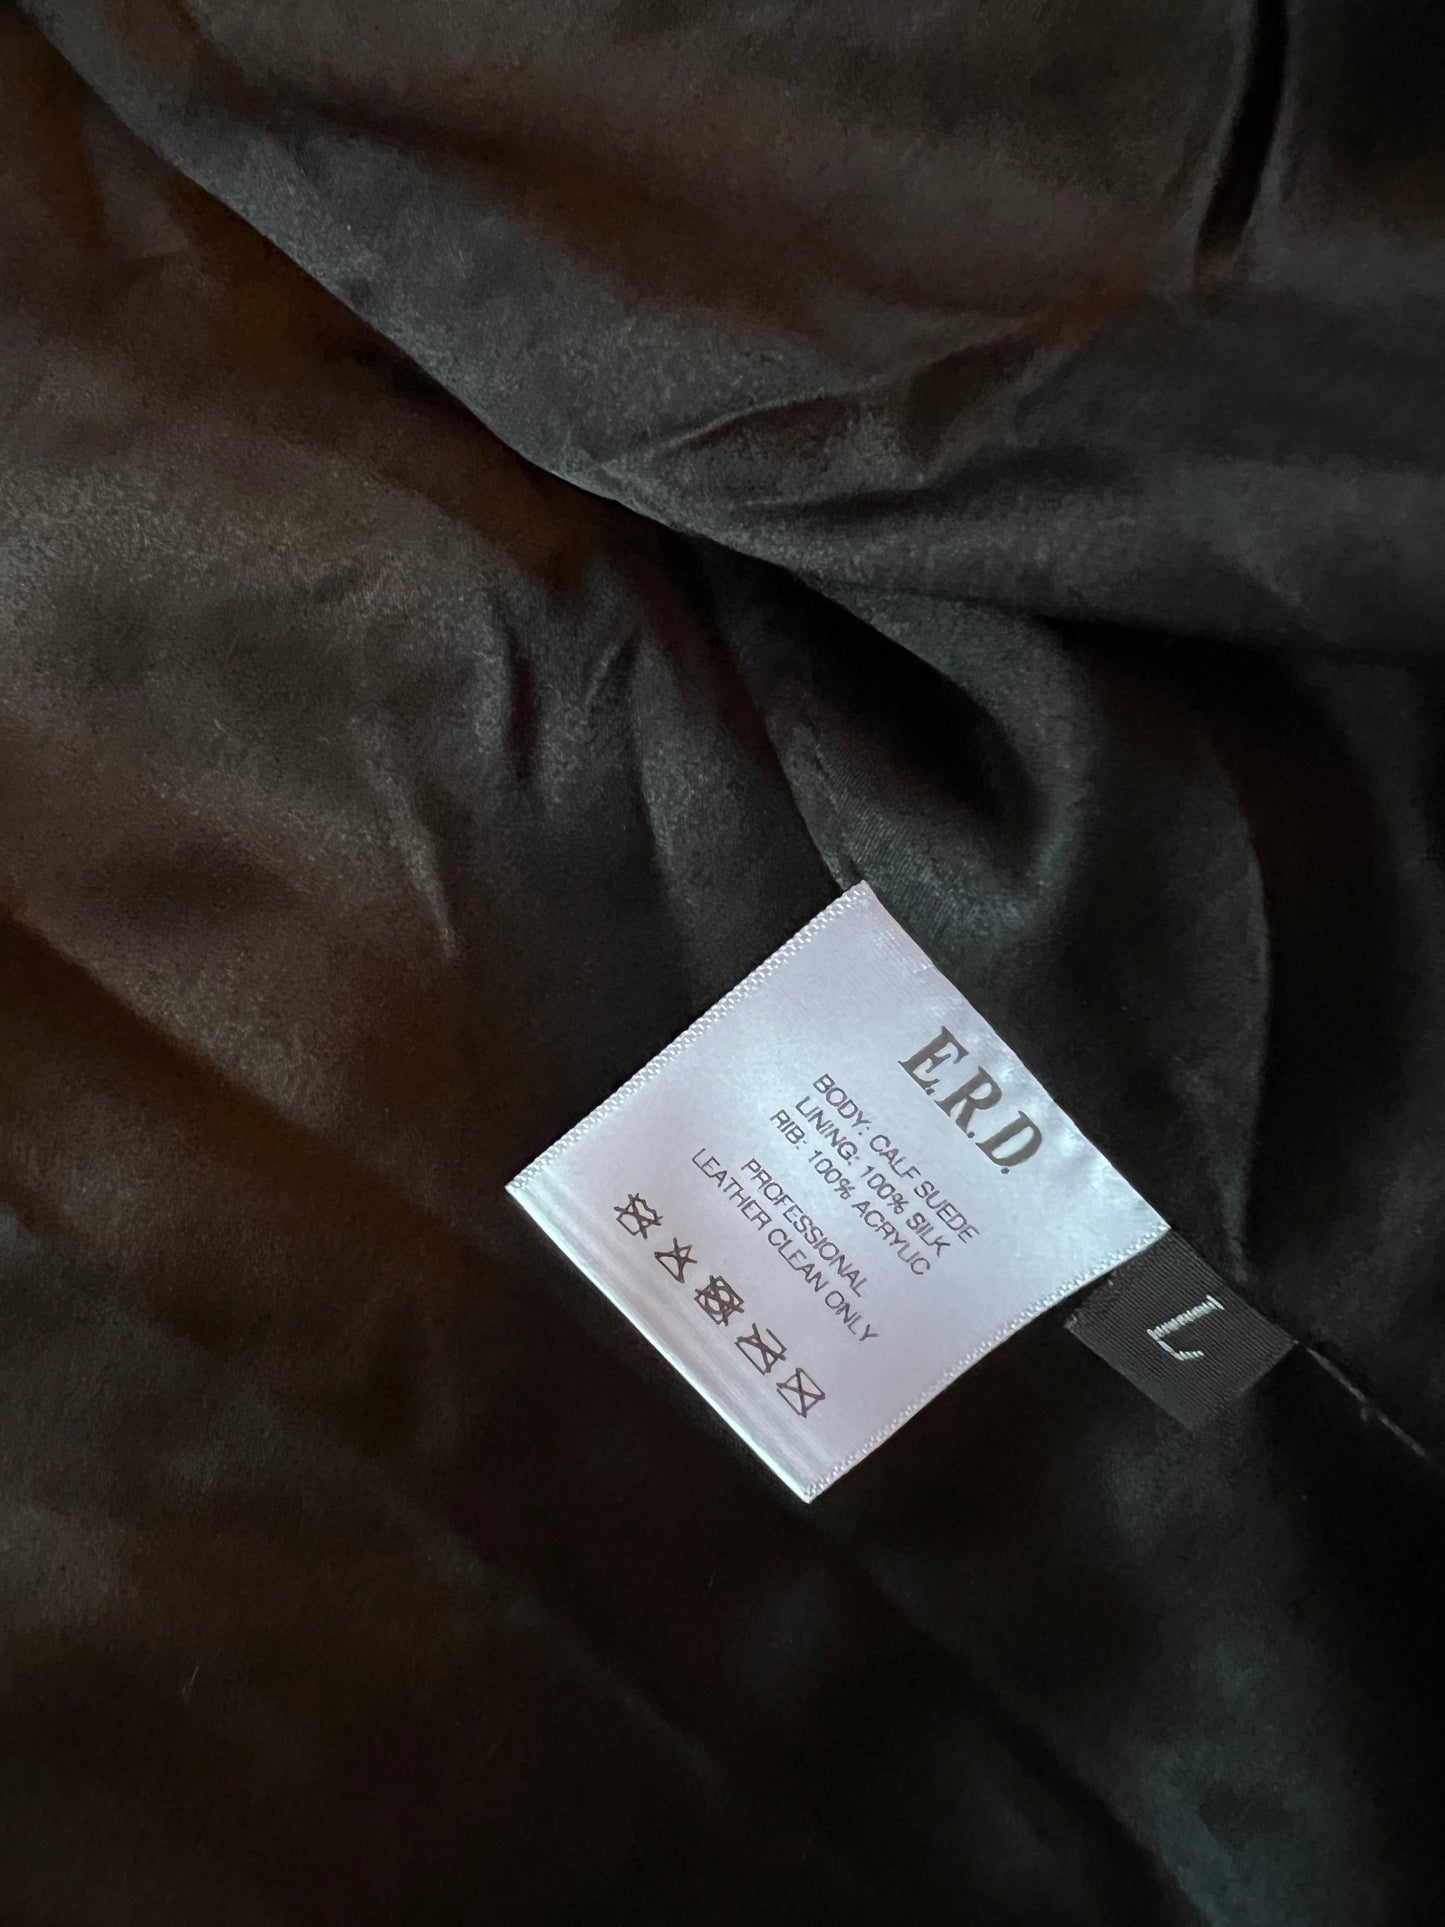 Enfants Riches Deprimes Black Suede Embroidered Size L Bomber Jacket